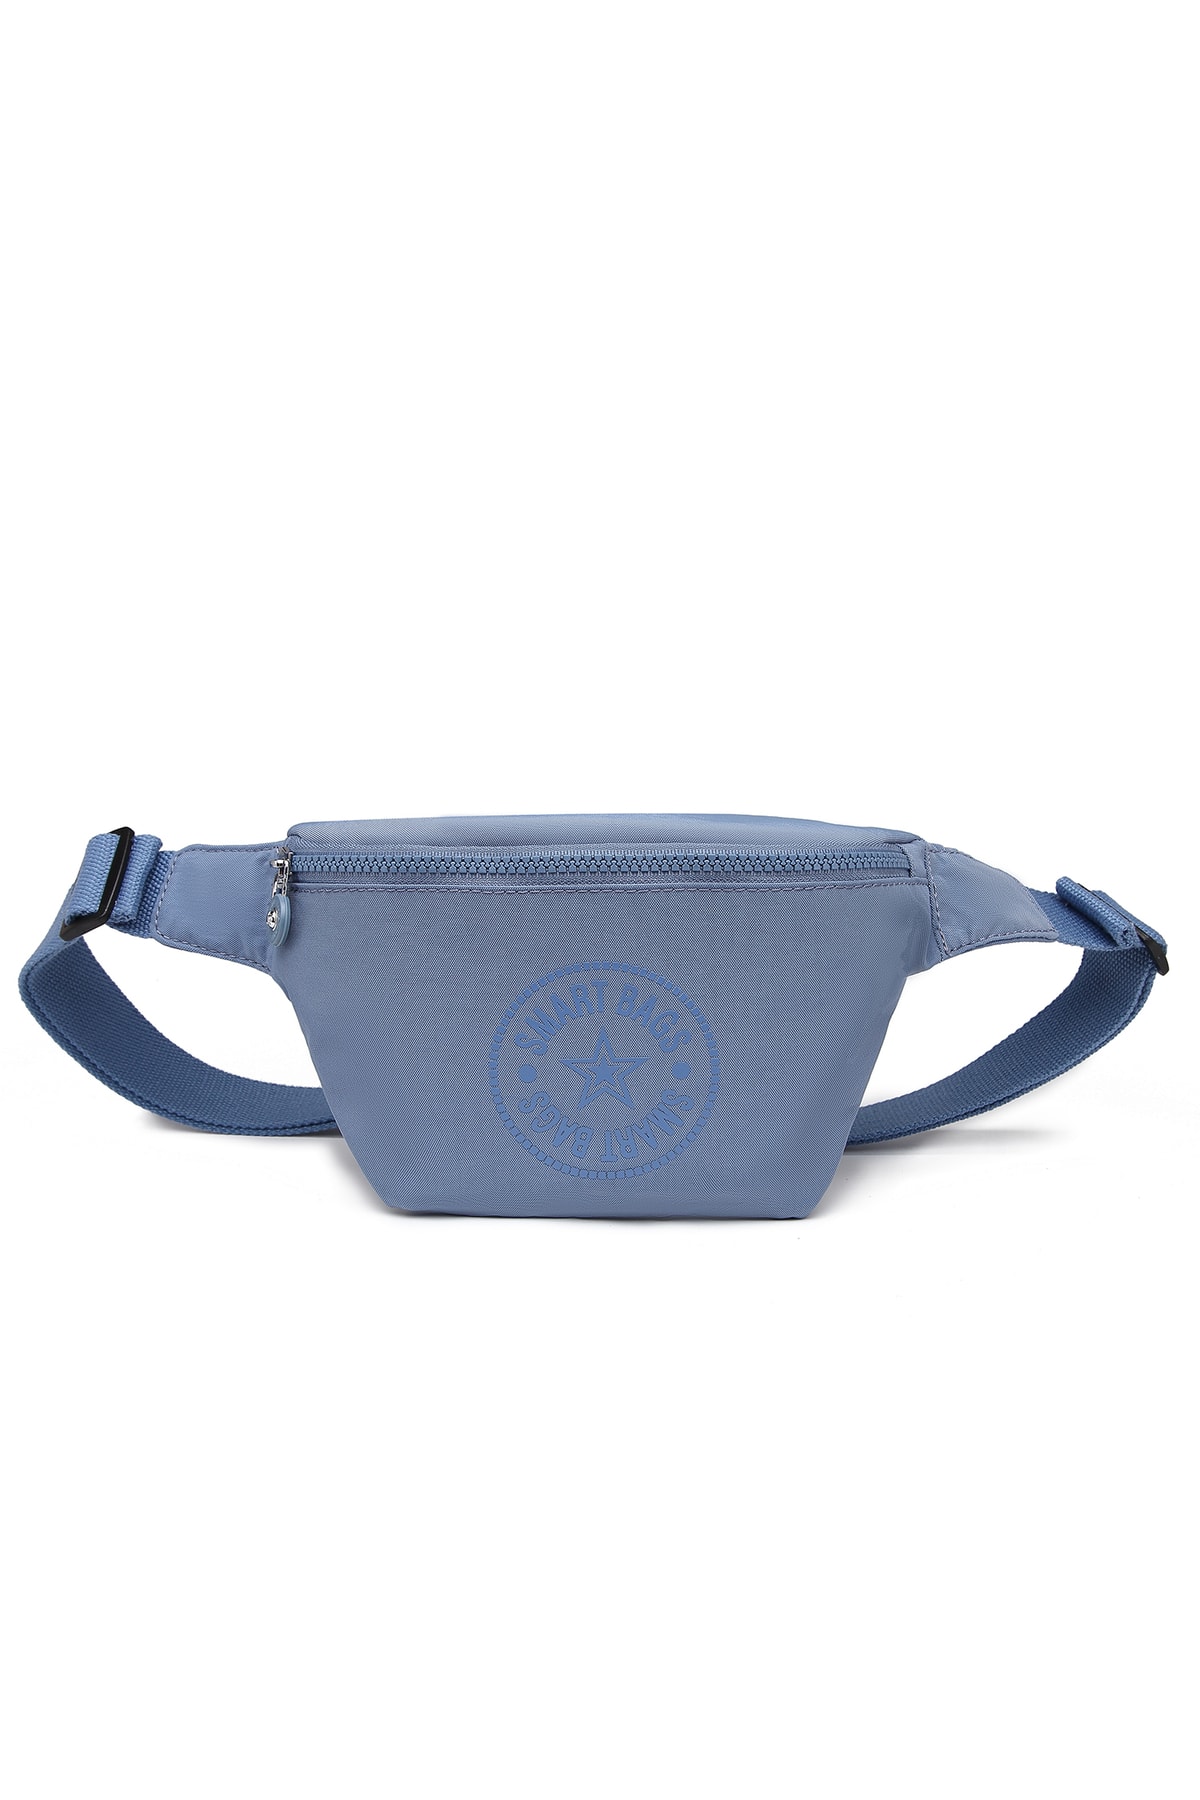 SMART BAGS Bodybag Kadın Bel Çantası Krinkıl Kumaş 3099 J.mavi